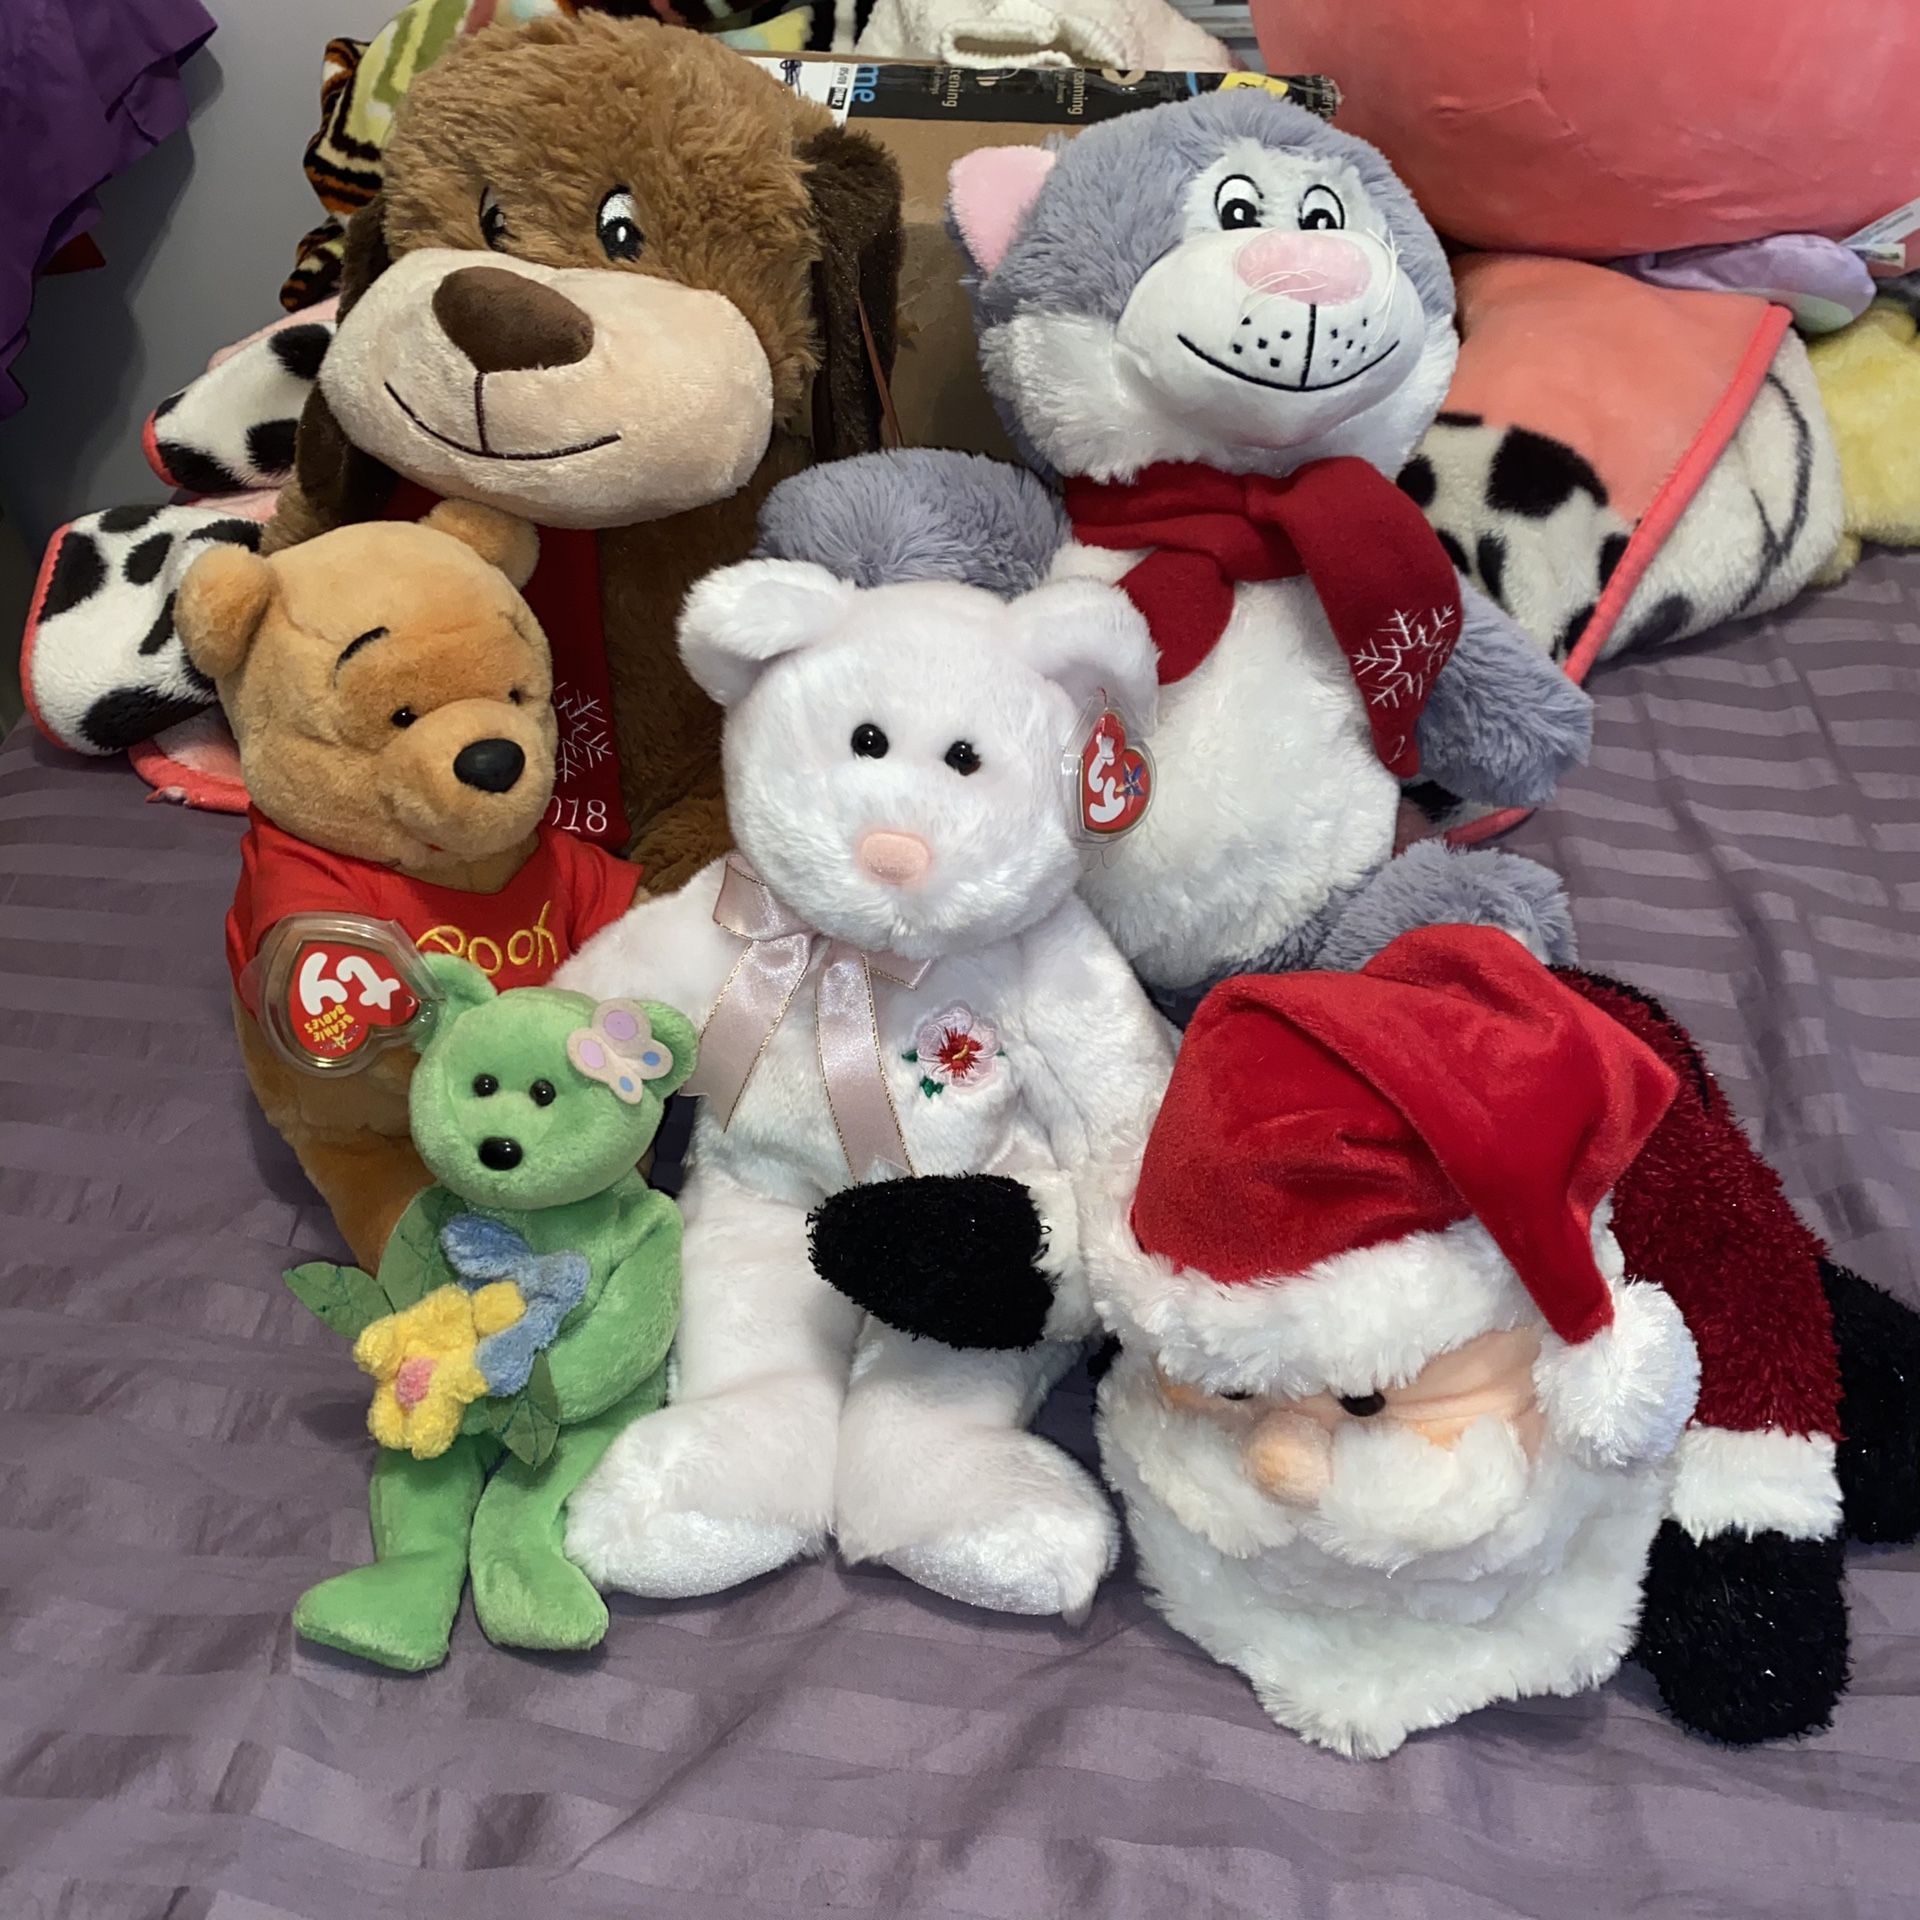 Bundle of stuffed animals